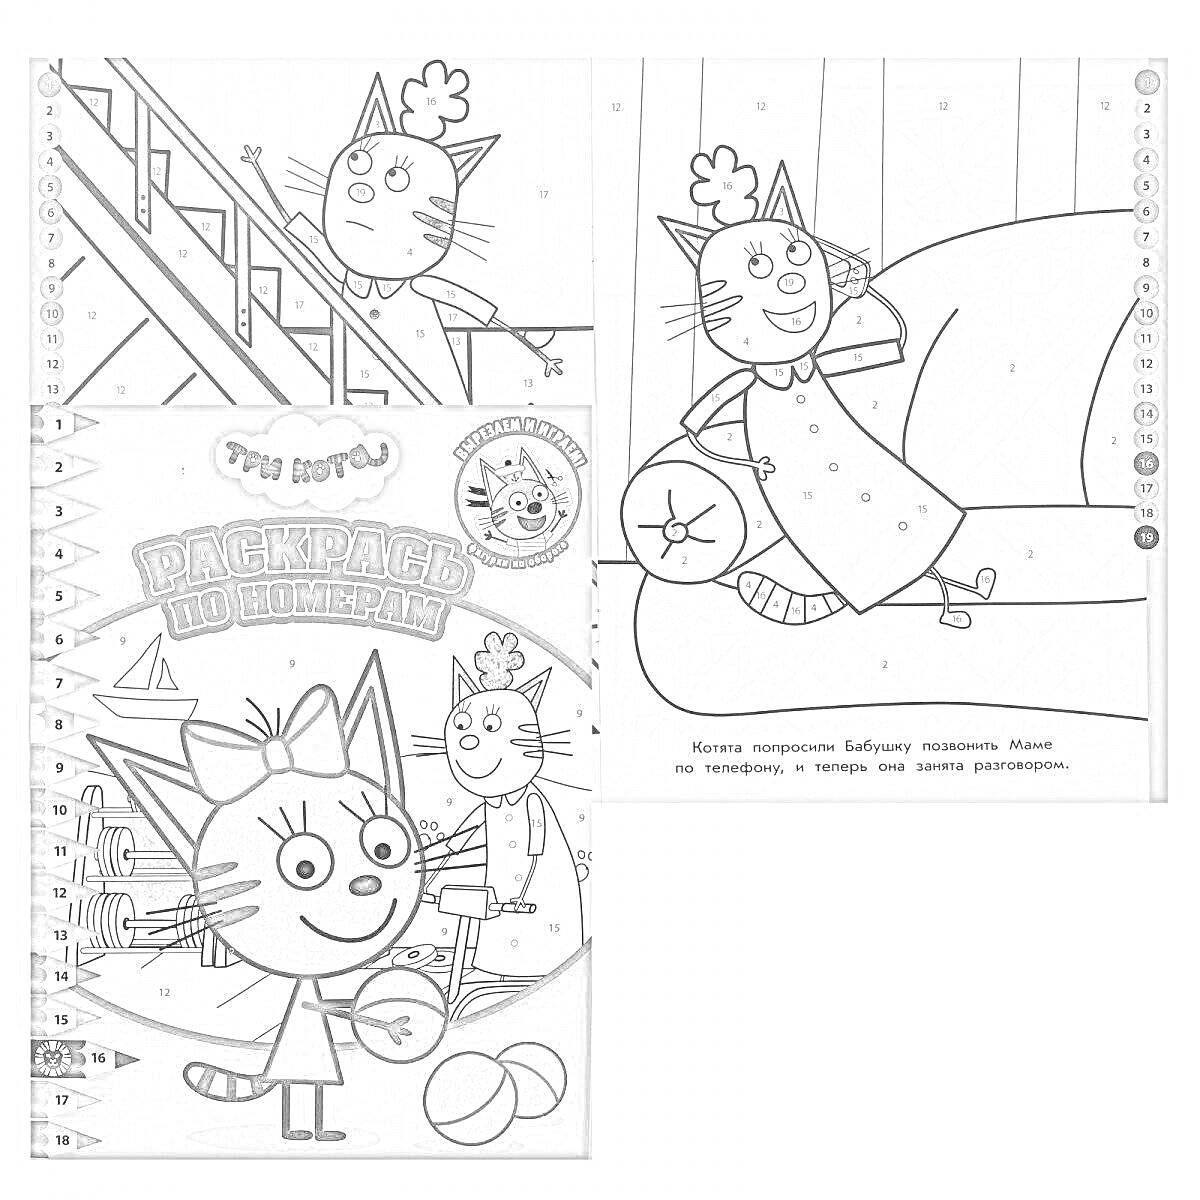 РаскраскаРаскраска по номерам с изображениями трех котов, на обложке изображен кот с мячом, на одной странице кот спускается по лестнице, а на другой странице котенок сидит на диване.